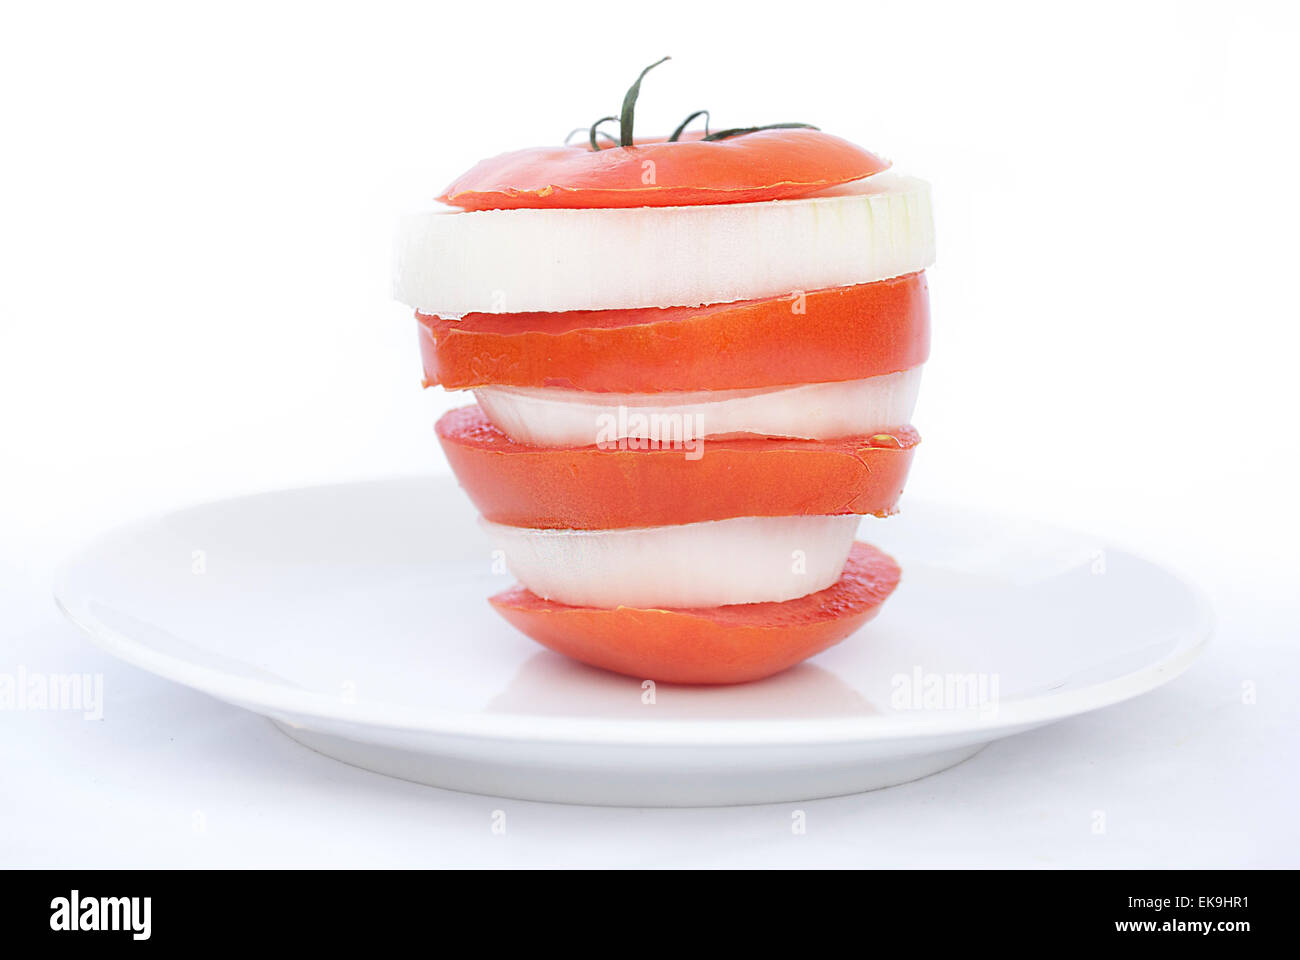 Tomate y cebolla en rodajas frescas Foto de stock